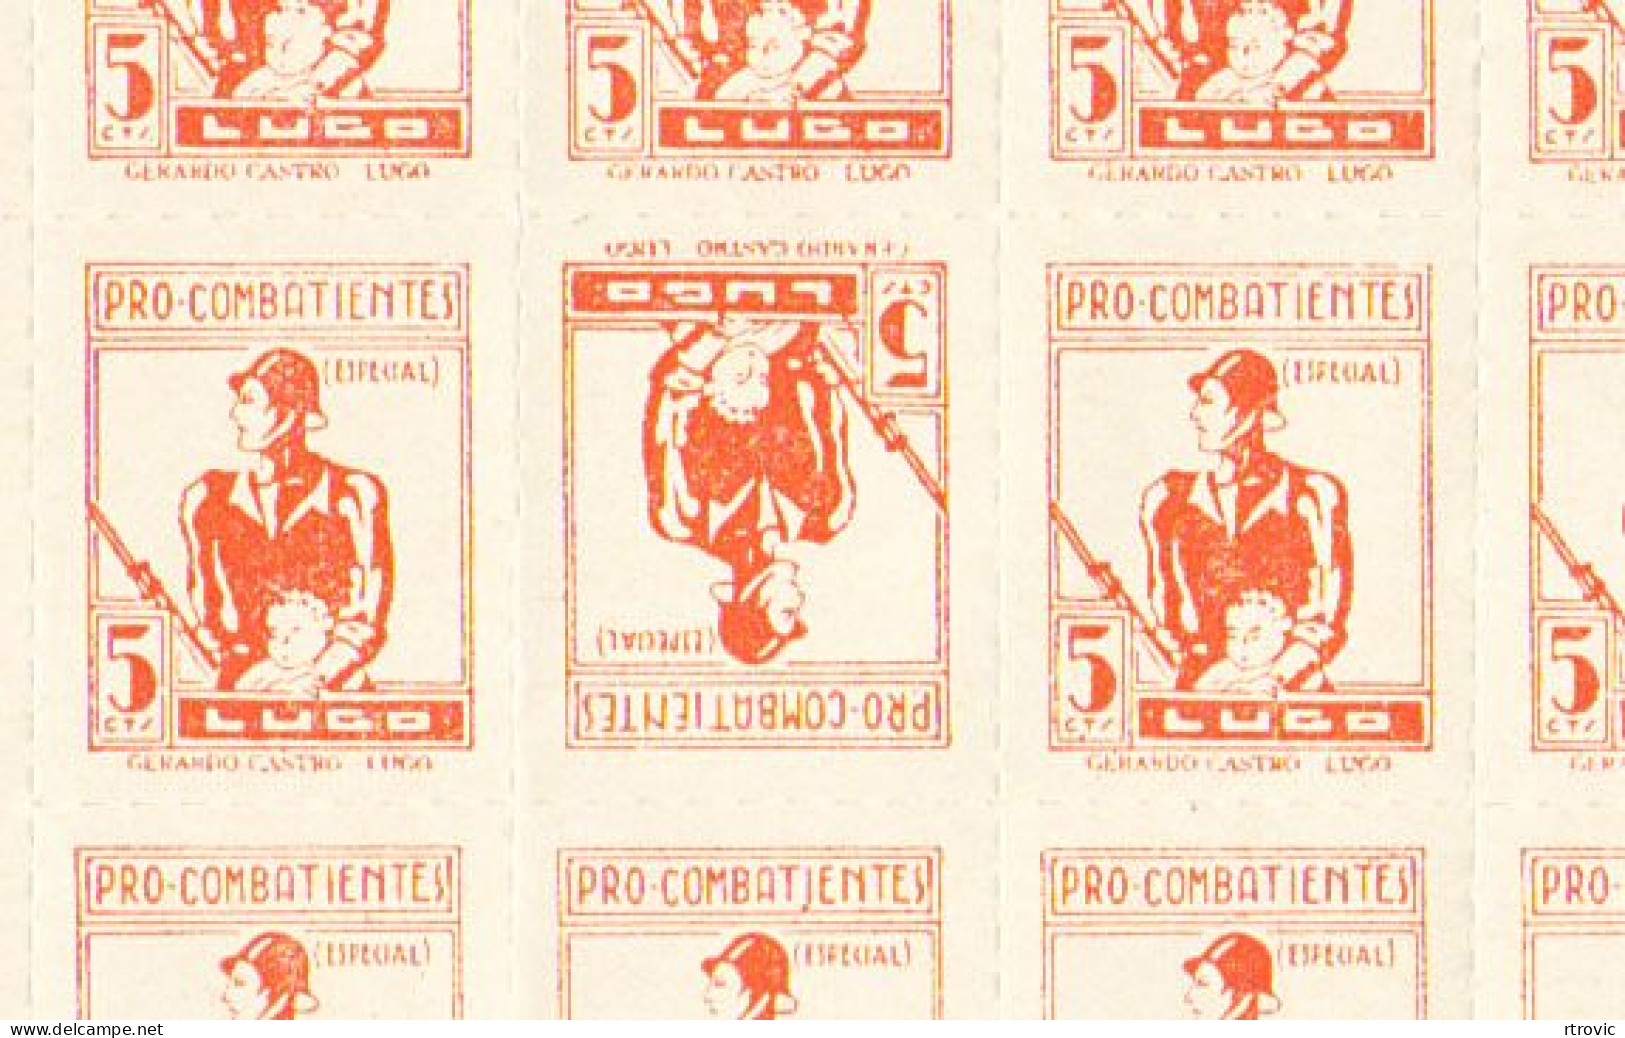 guerra civil - lugo 89 hojas de 50 sellos